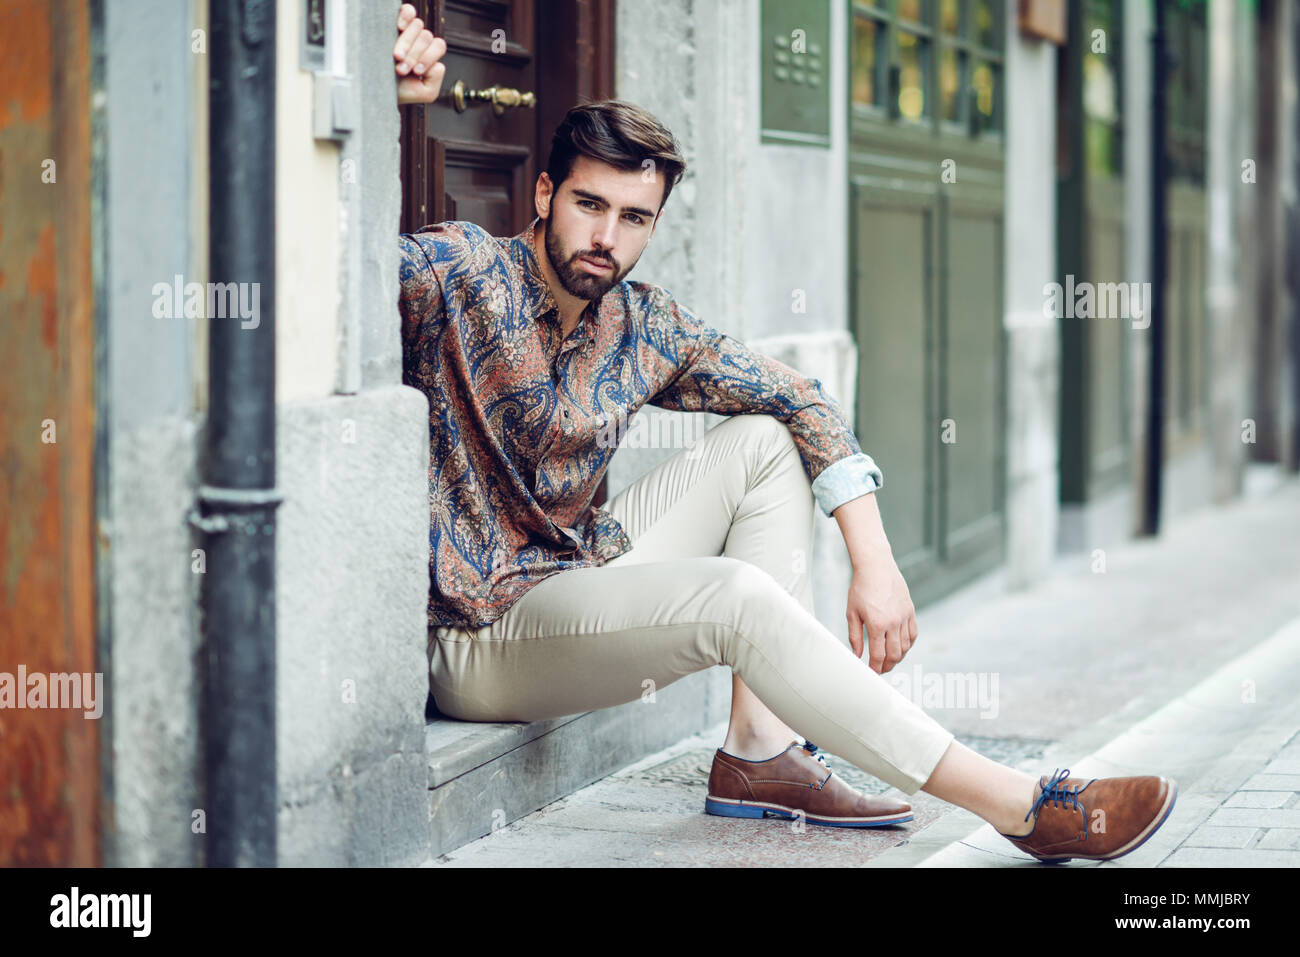 Joven Hombre Barbado, modelo de moda sentados en un paso vistiendo ropa casual. Chico con barba peinado moderno mirando a otro lado de la calle Fotografía de stock - Alamy